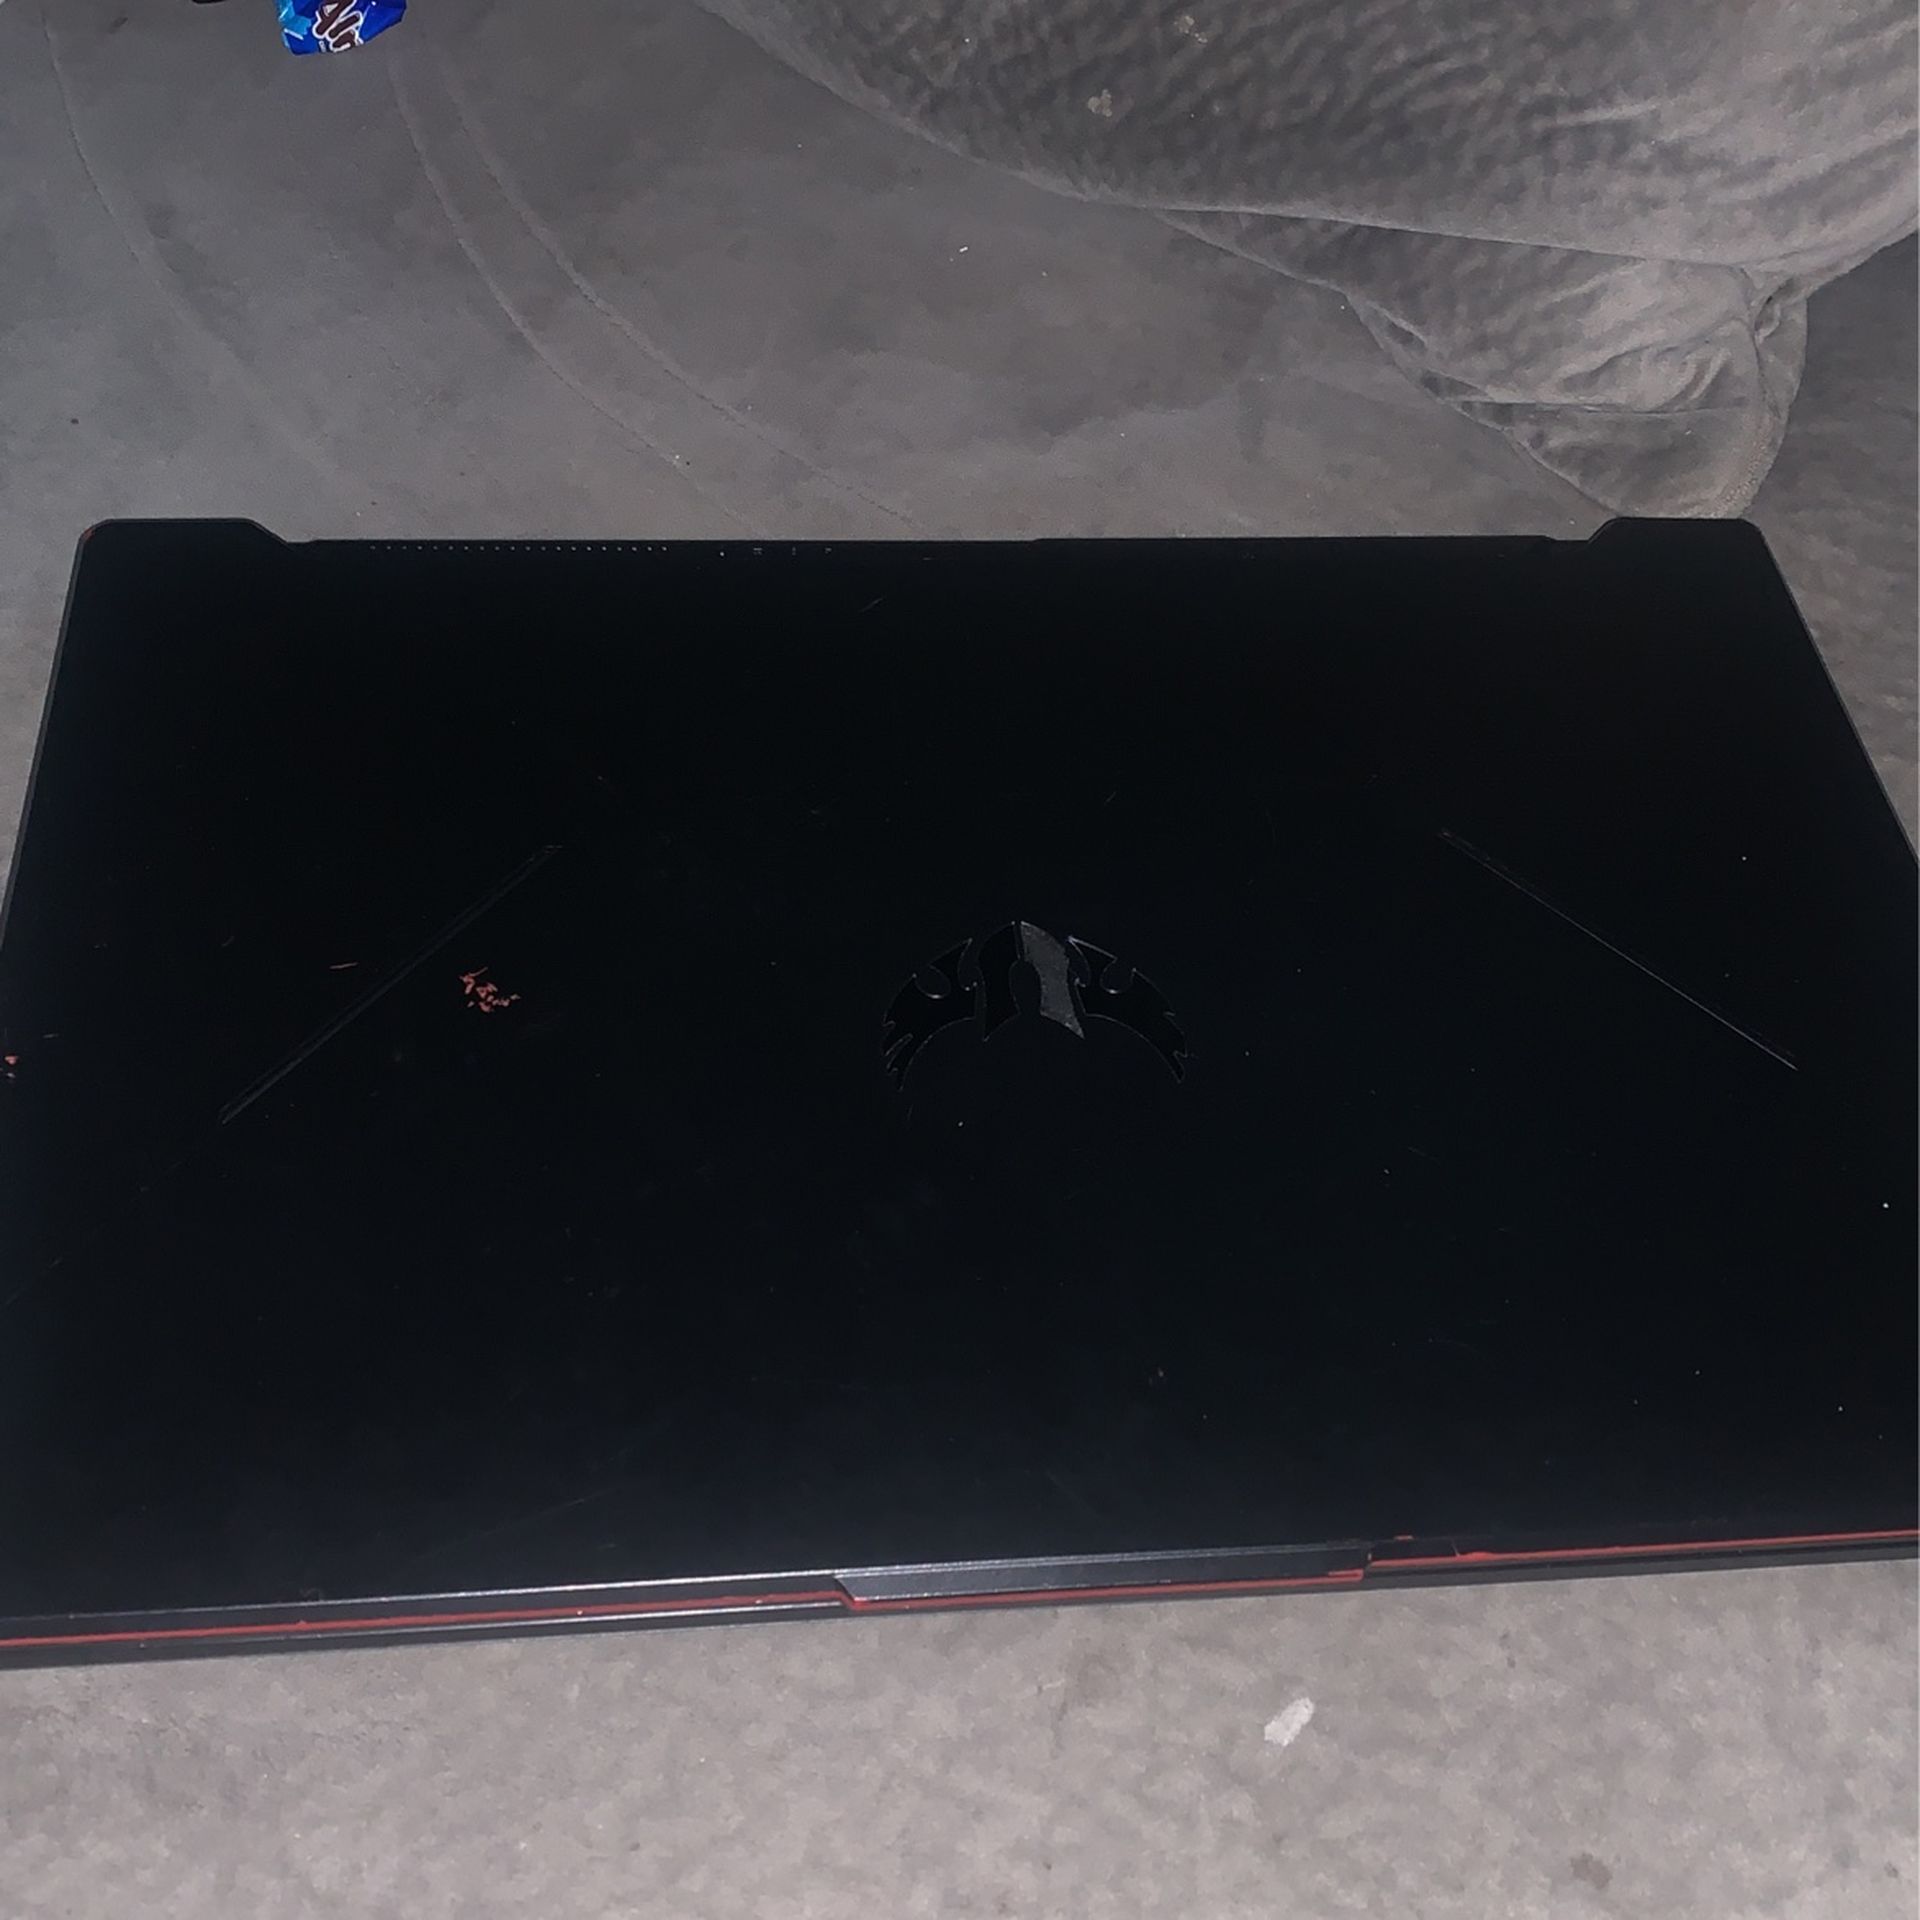 Asus Tuf Gaming Laptop For Sale